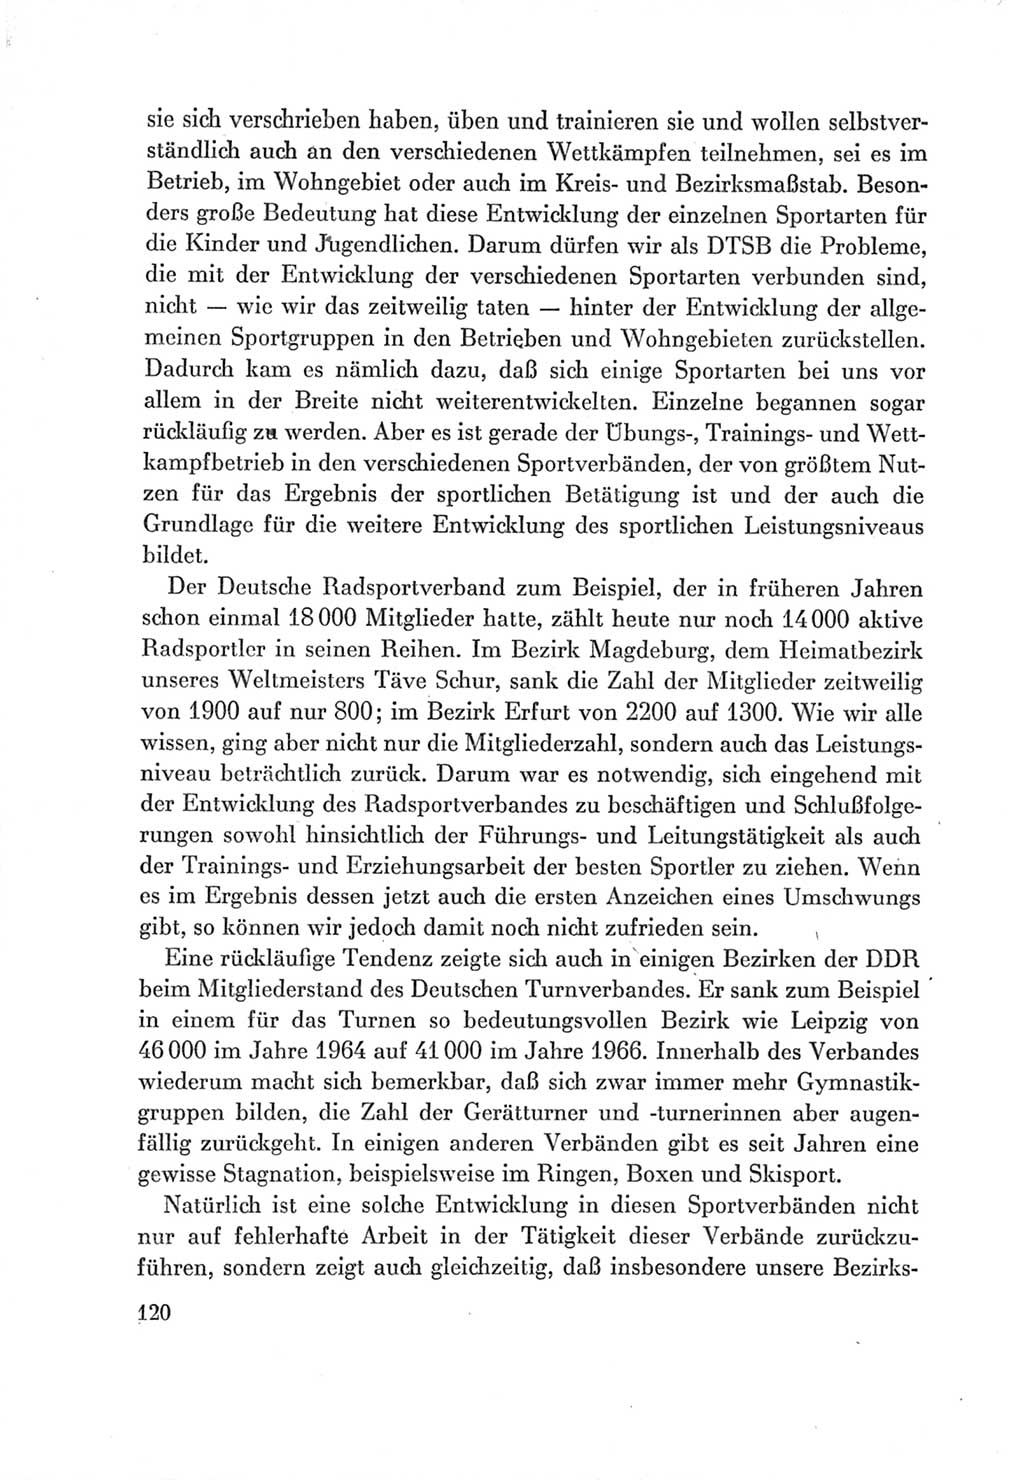 Protokoll der Verhandlungen des Ⅶ. Parteitages der Sozialistischen Einheitspartei Deutschlands (SED) [Deutsche Demokratische Republik (DDR)] 1967, Band Ⅲ, Seite 120 (Prot. Verh. Ⅶ. PT SED DDR 1967, Bd. Ⅲ, S. 120)